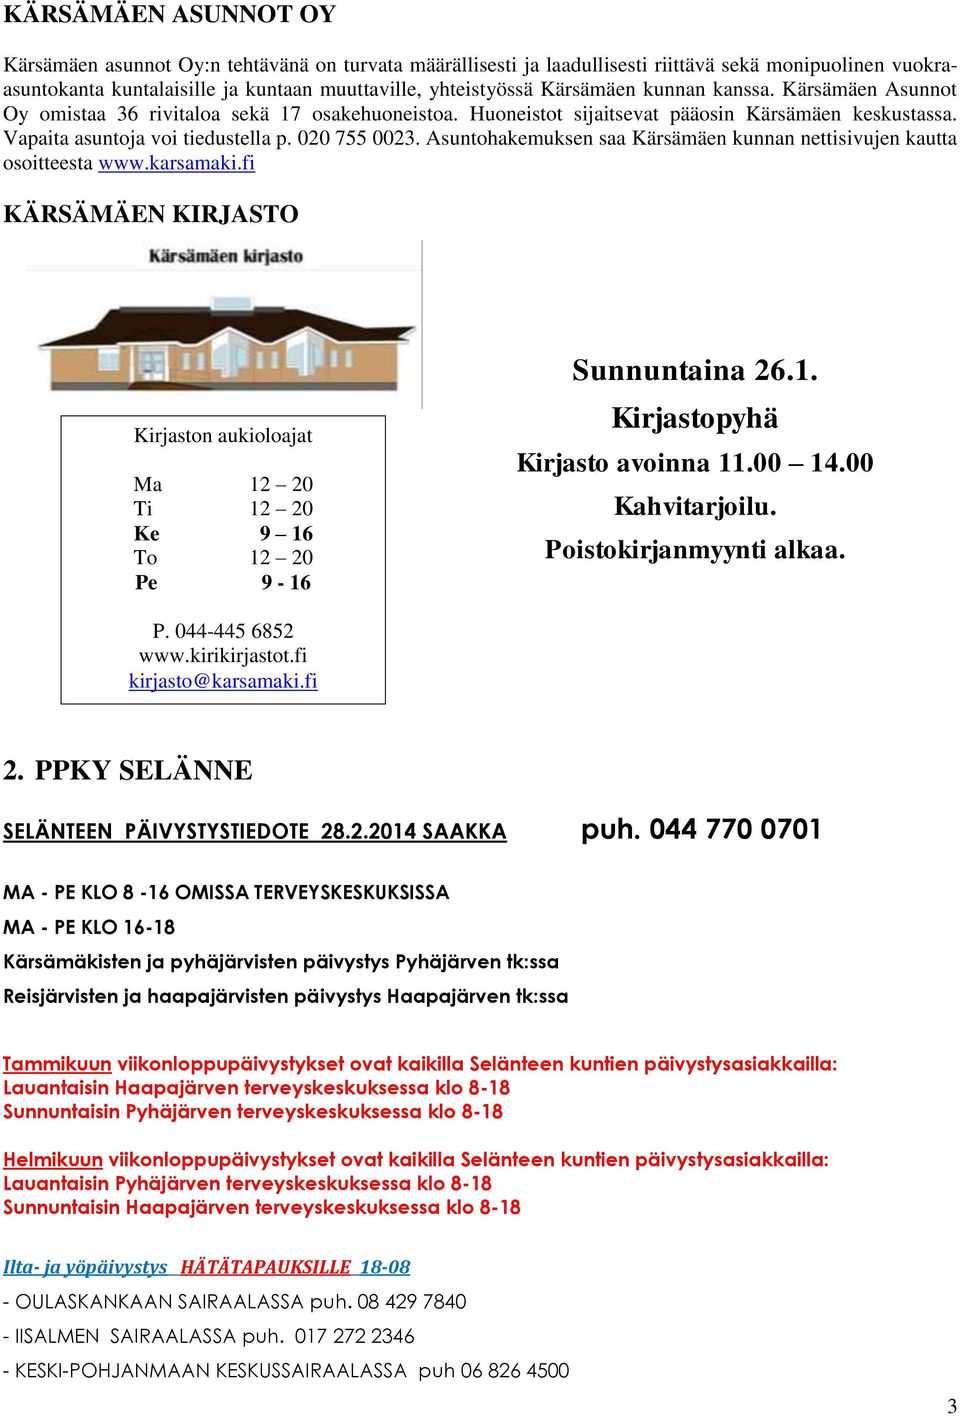 Asuntohakemuksen saa Kärsämäen kunnan nettisivujen kautta osoitteesta www.karsamaki.fi KÄRSÄMÄEN KIRJASTO Kirjaston aukioloajat Ma 12 20 Ti 12 20 Ke 9 16 To 12 20 Pe 9-16 Sunnuntaina 26.1. Kirjastopyhä Kirjasto avoinna 11.